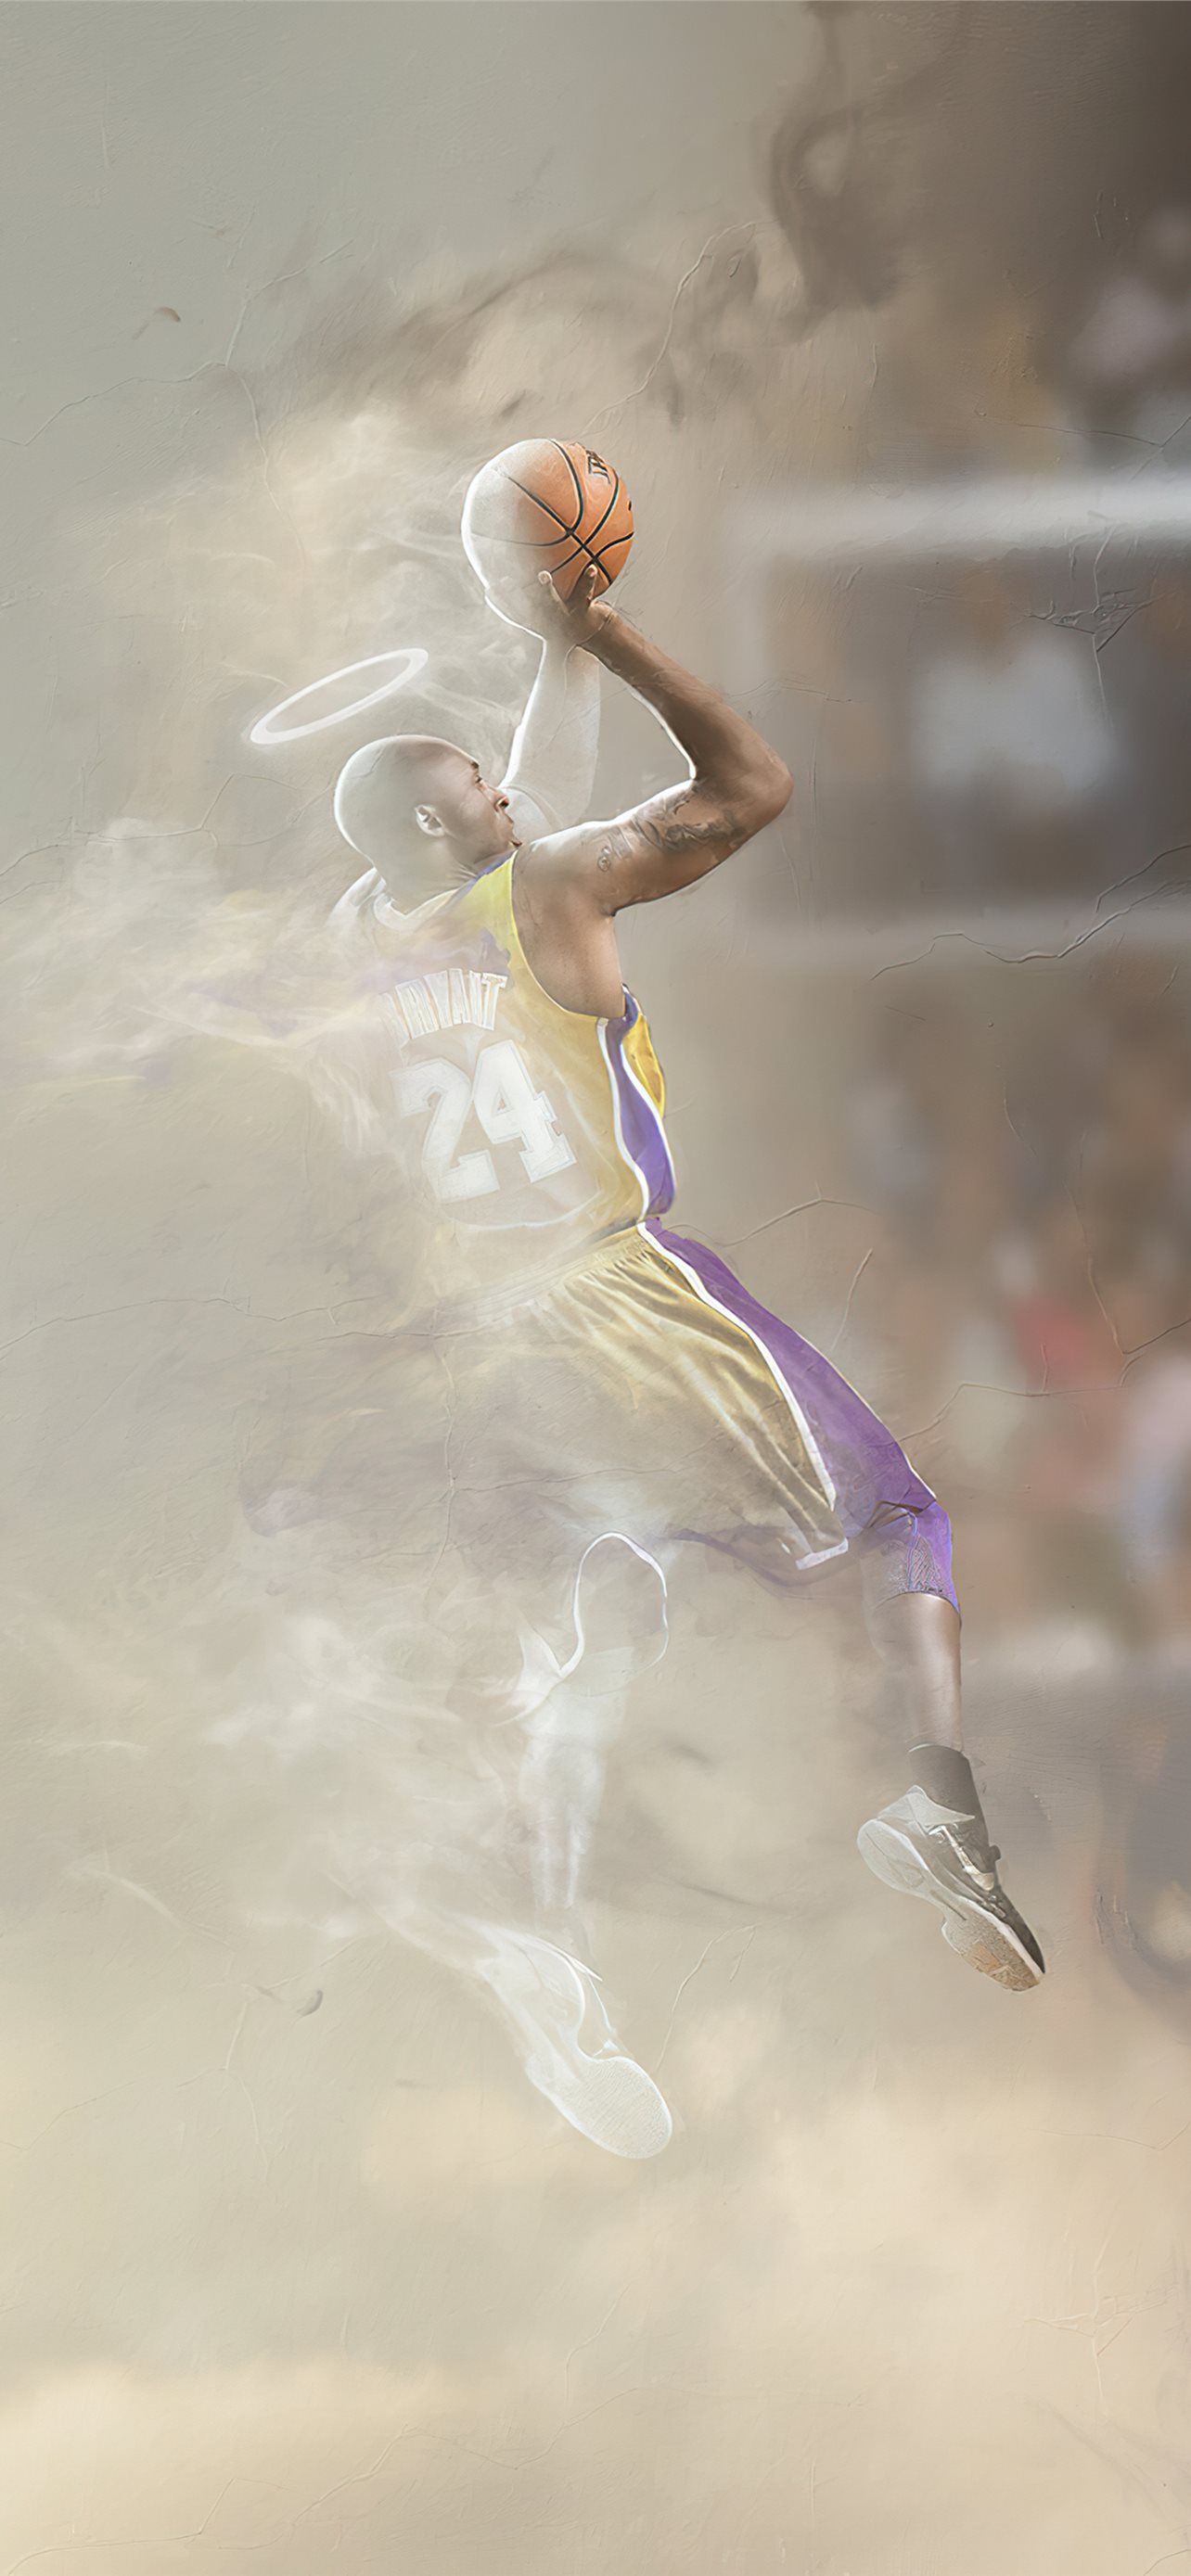 Bạn muốn thể hiện sự yêu thương và tôn trọng của mình với Kobe Bryant thông qua màn hình iPhone của bạn? Tìm kiếm những Best Kobe Bryant iPhone HD Wallpapers trên iLikeWallpaper và cảm nhận sự hùng vĩ và sức mạnh của anh ấy mỗi khi mở màn hình điện thoại. 